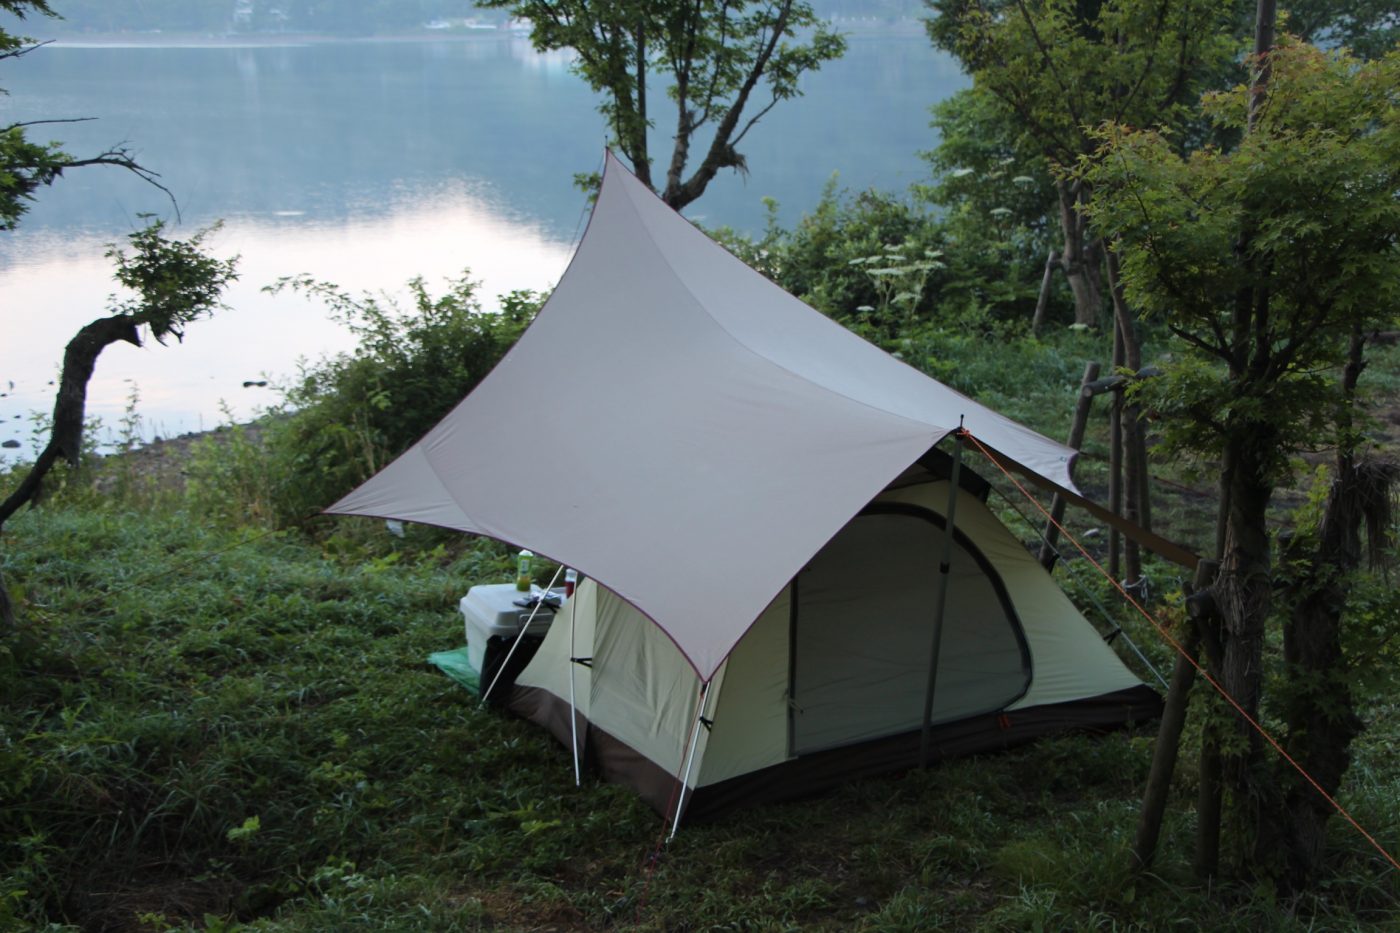 ソロキャンパー向け 暑くて眠れない そんな時はインナーテントのみでメッシュにして寝ましょう キャンプ初心者向け総合情報ブログ Hyper Camp Creators